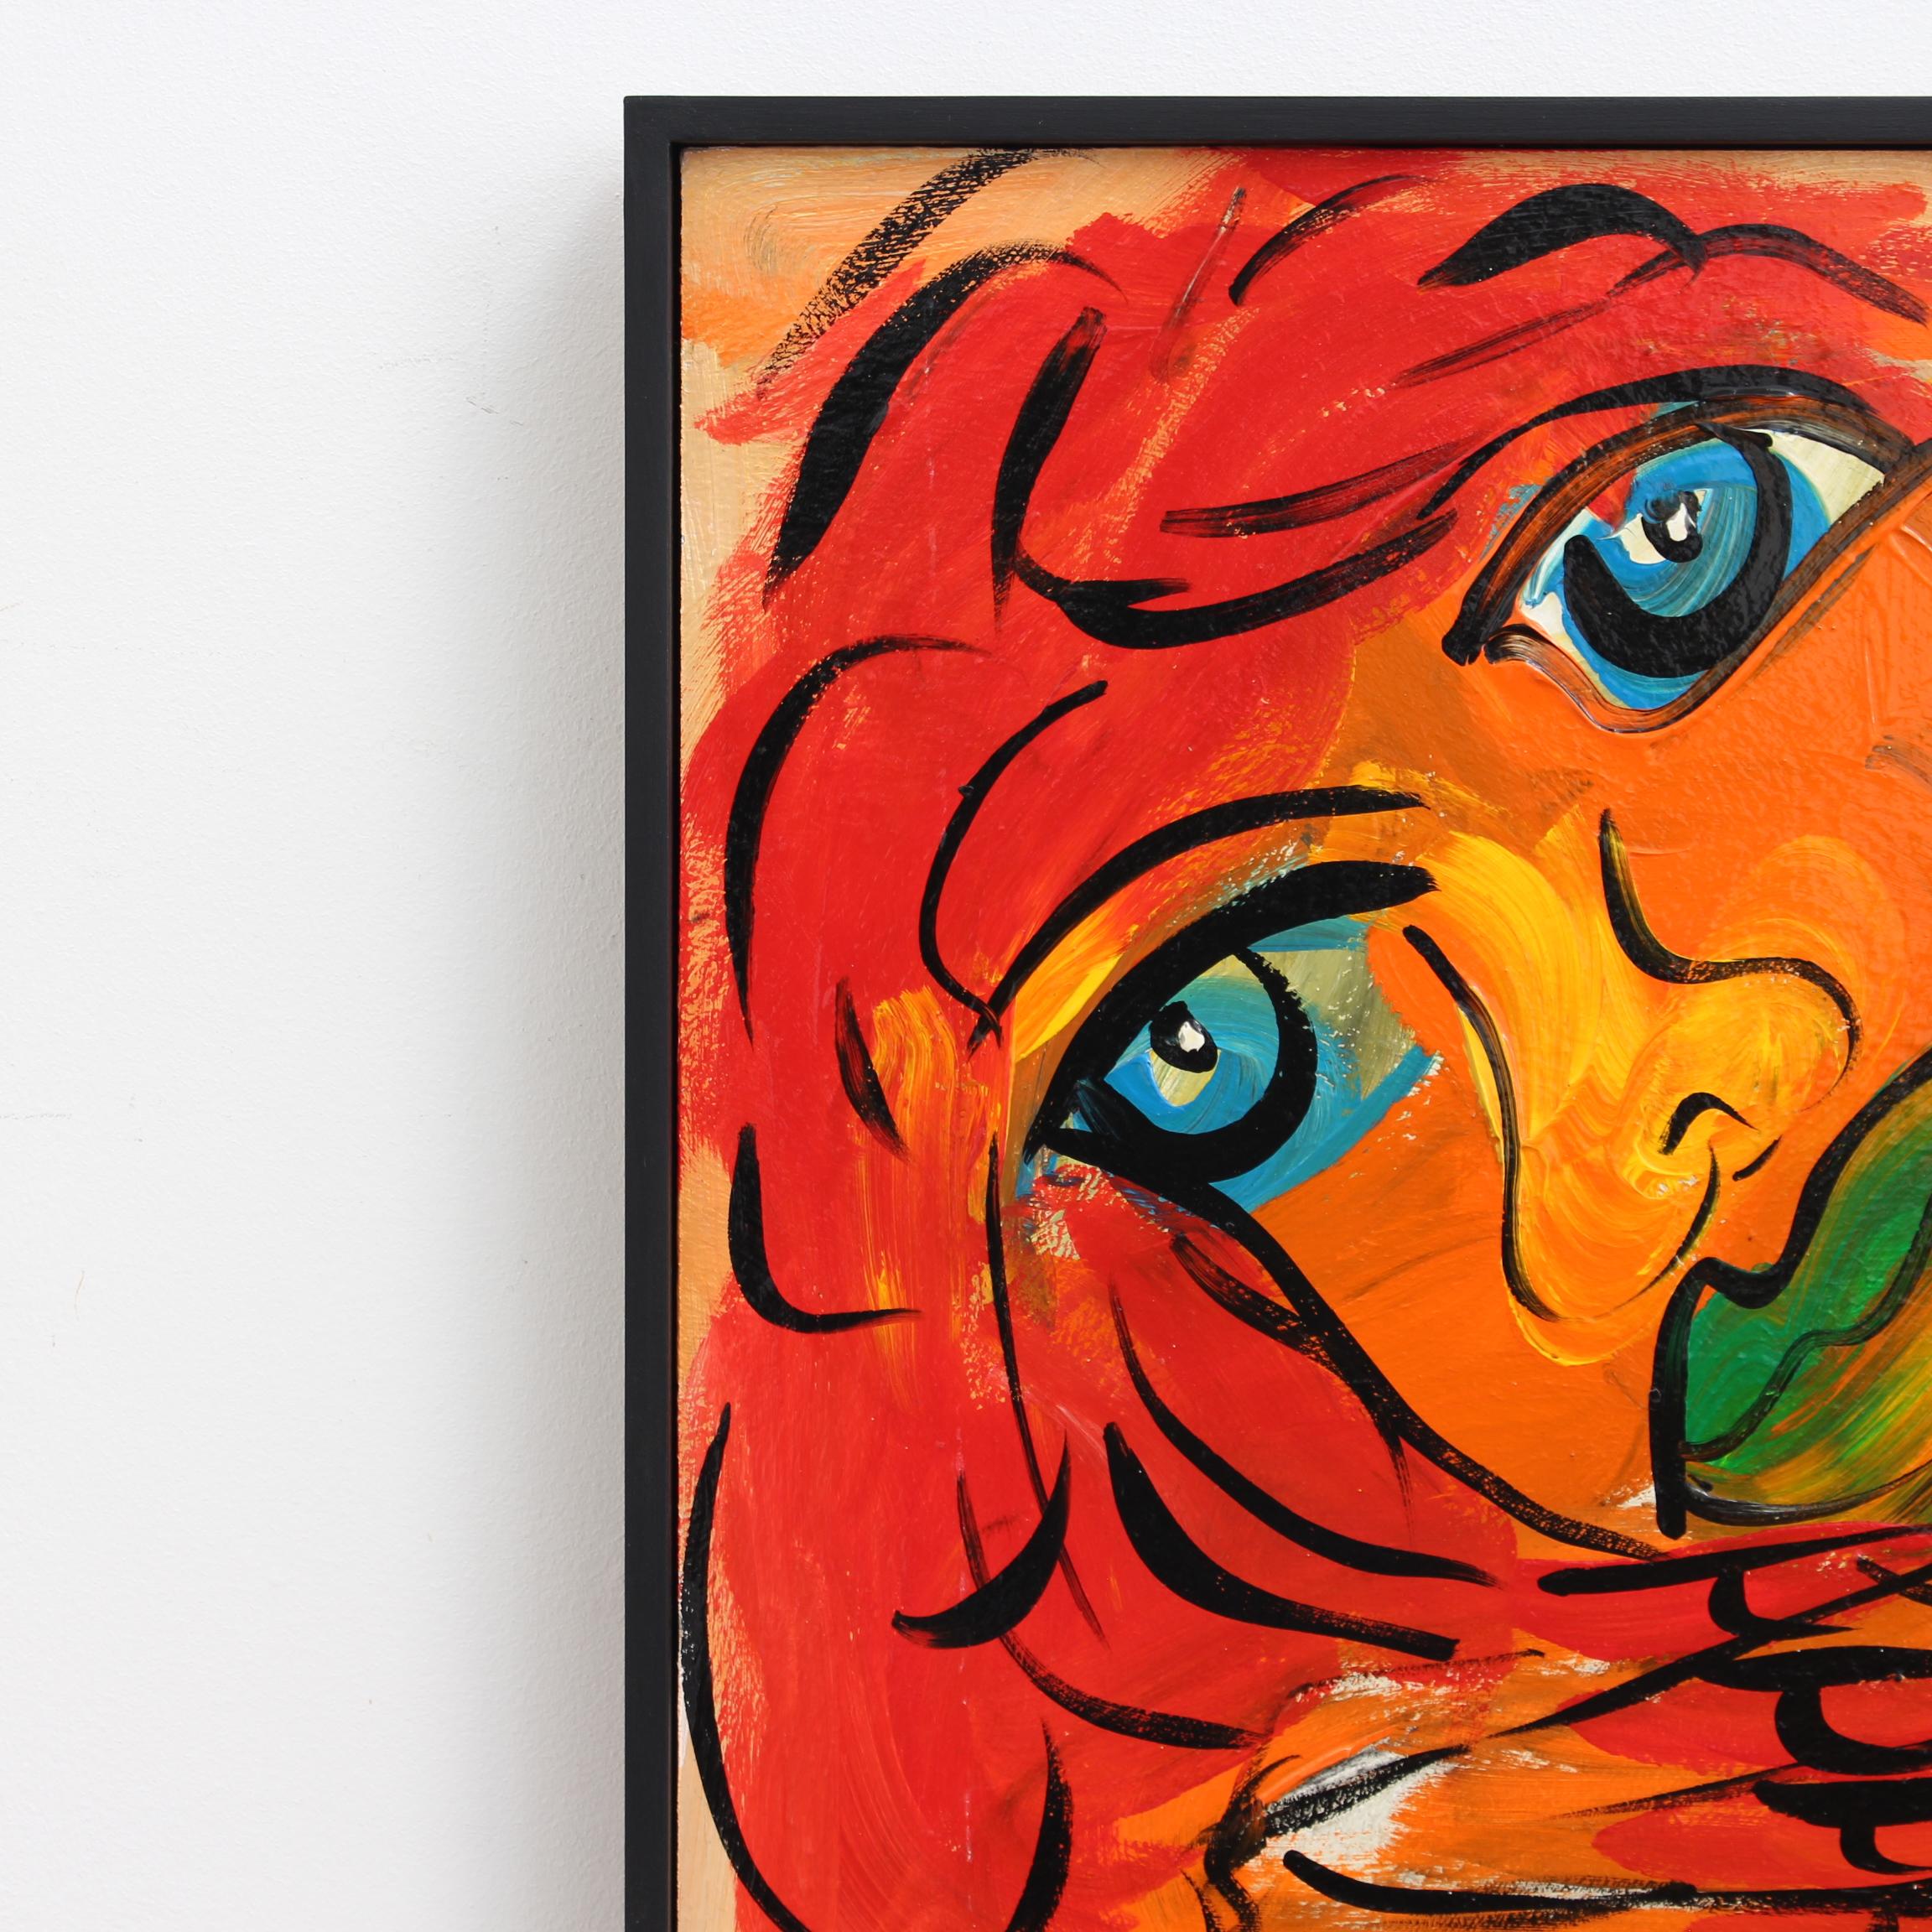 Femme aux yeux bleus, huile sur panneau, par Peters Robert Keil (1985). Une rousse aux seins nus fixe le spectateur de ses yeux bleus intenses. Une mystérieuse main bleue apparaît furtivement dans la partie inférieure droite du tableau, suggérant